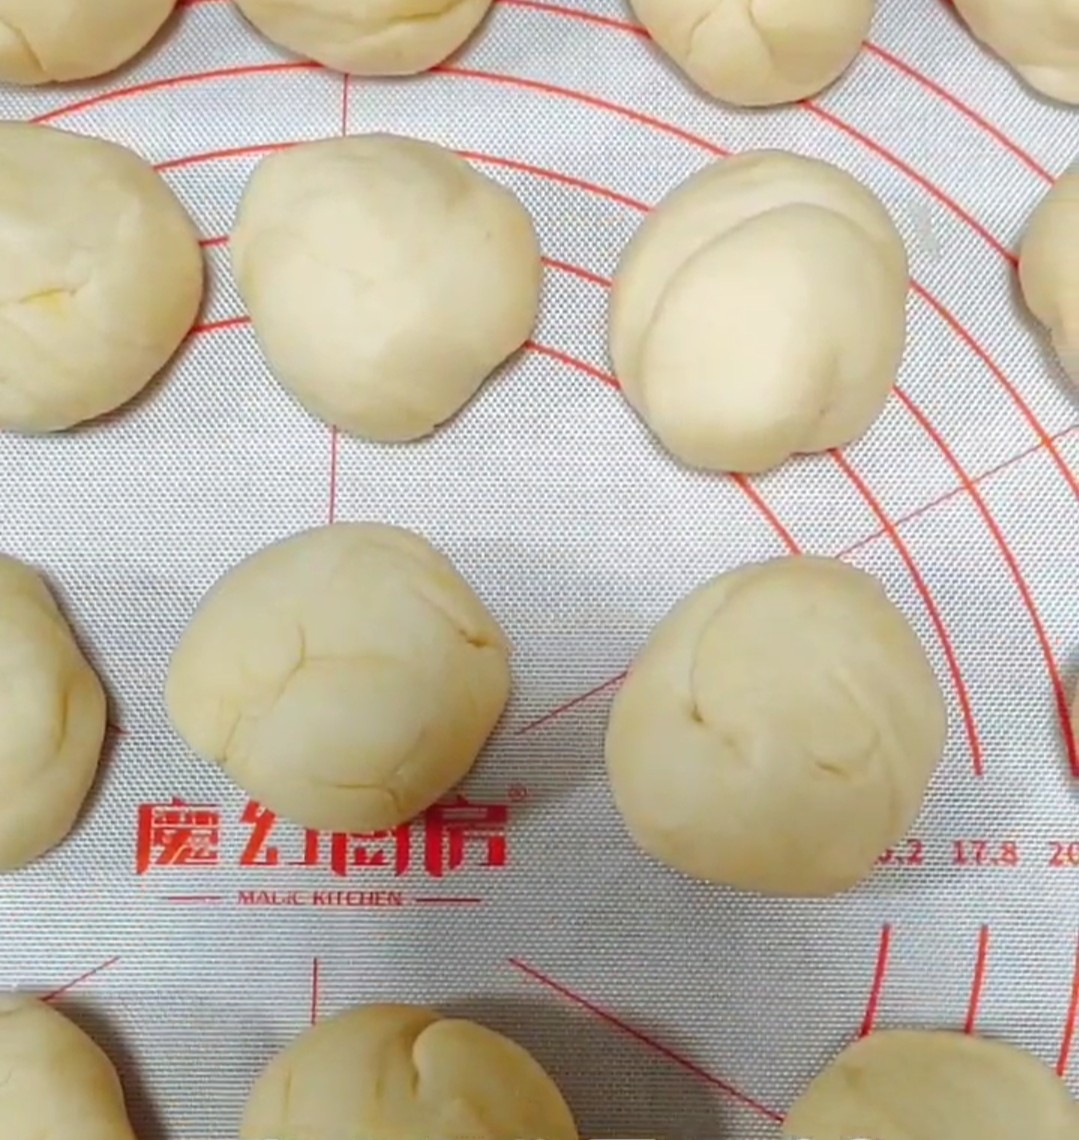 Xinjiang Baked Buns recipe